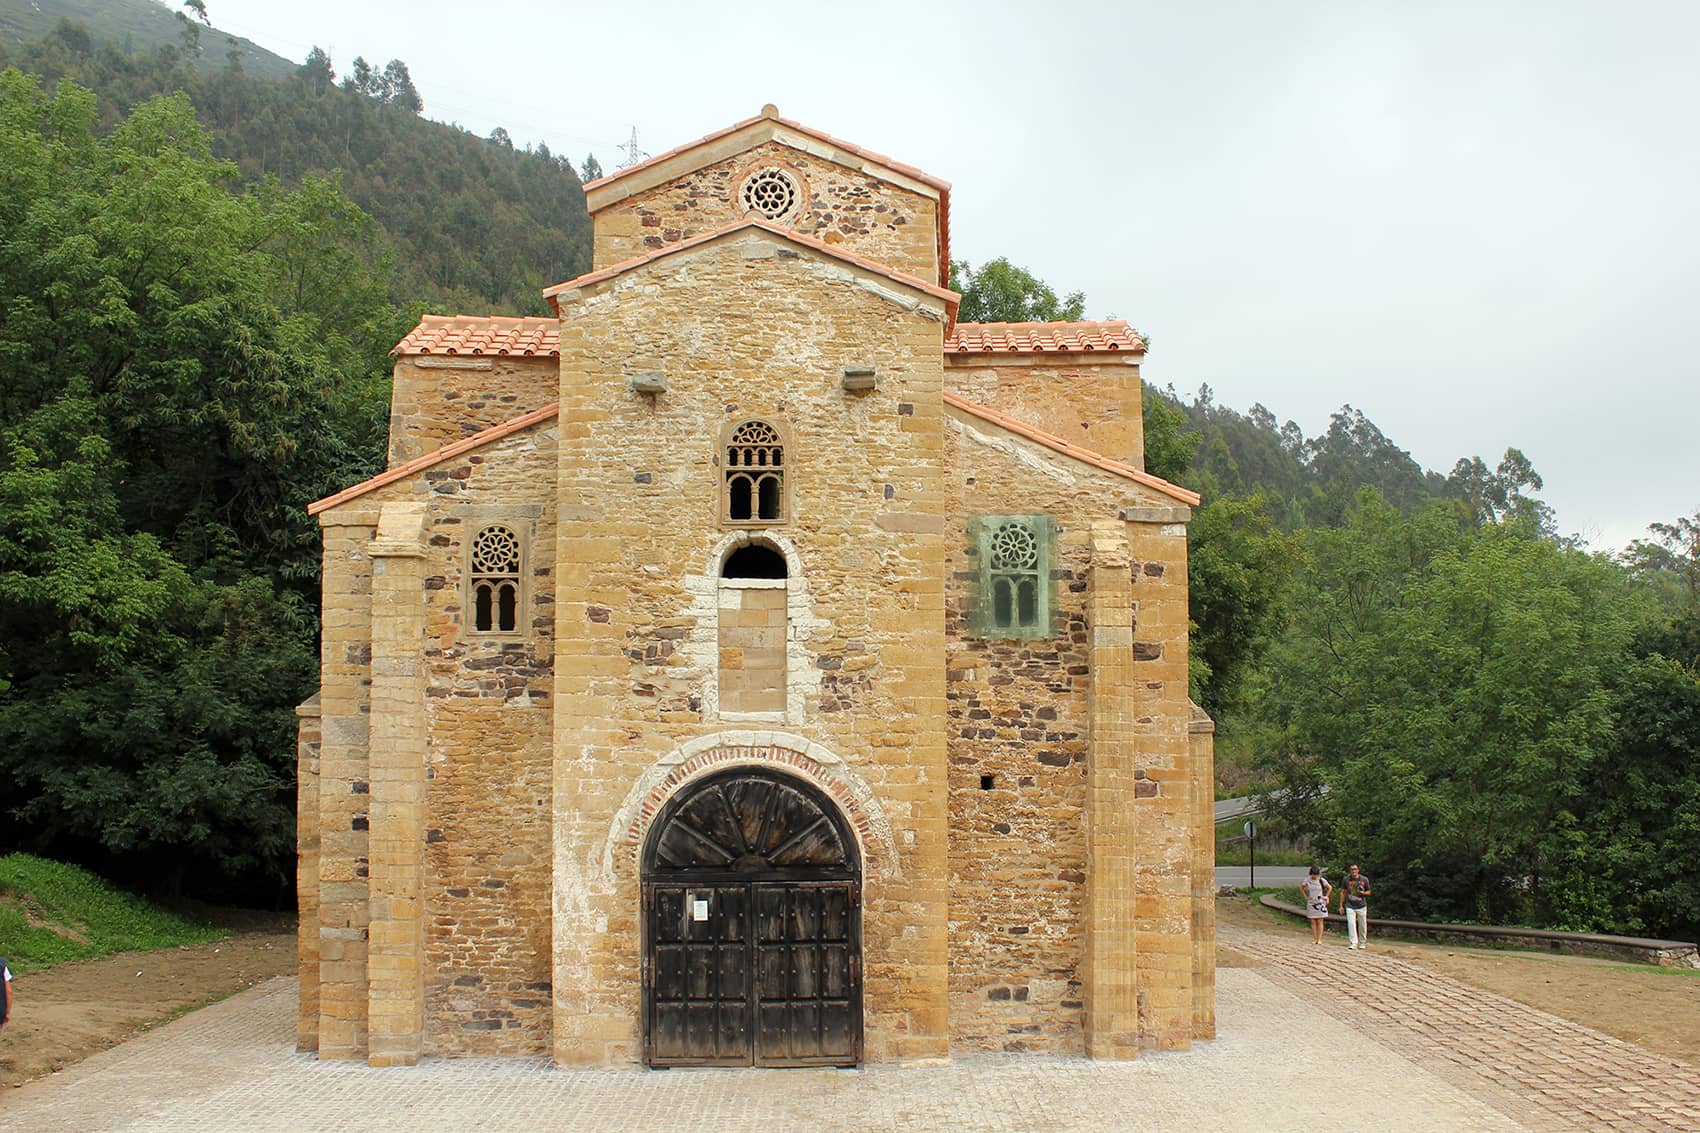 Fotografía con perspectiva frontal de la iglesia prerrománica de San Miguel de Lillo, se puede observar el pórtico central y los contrafuertes, además de la puerta de mandera entallada.